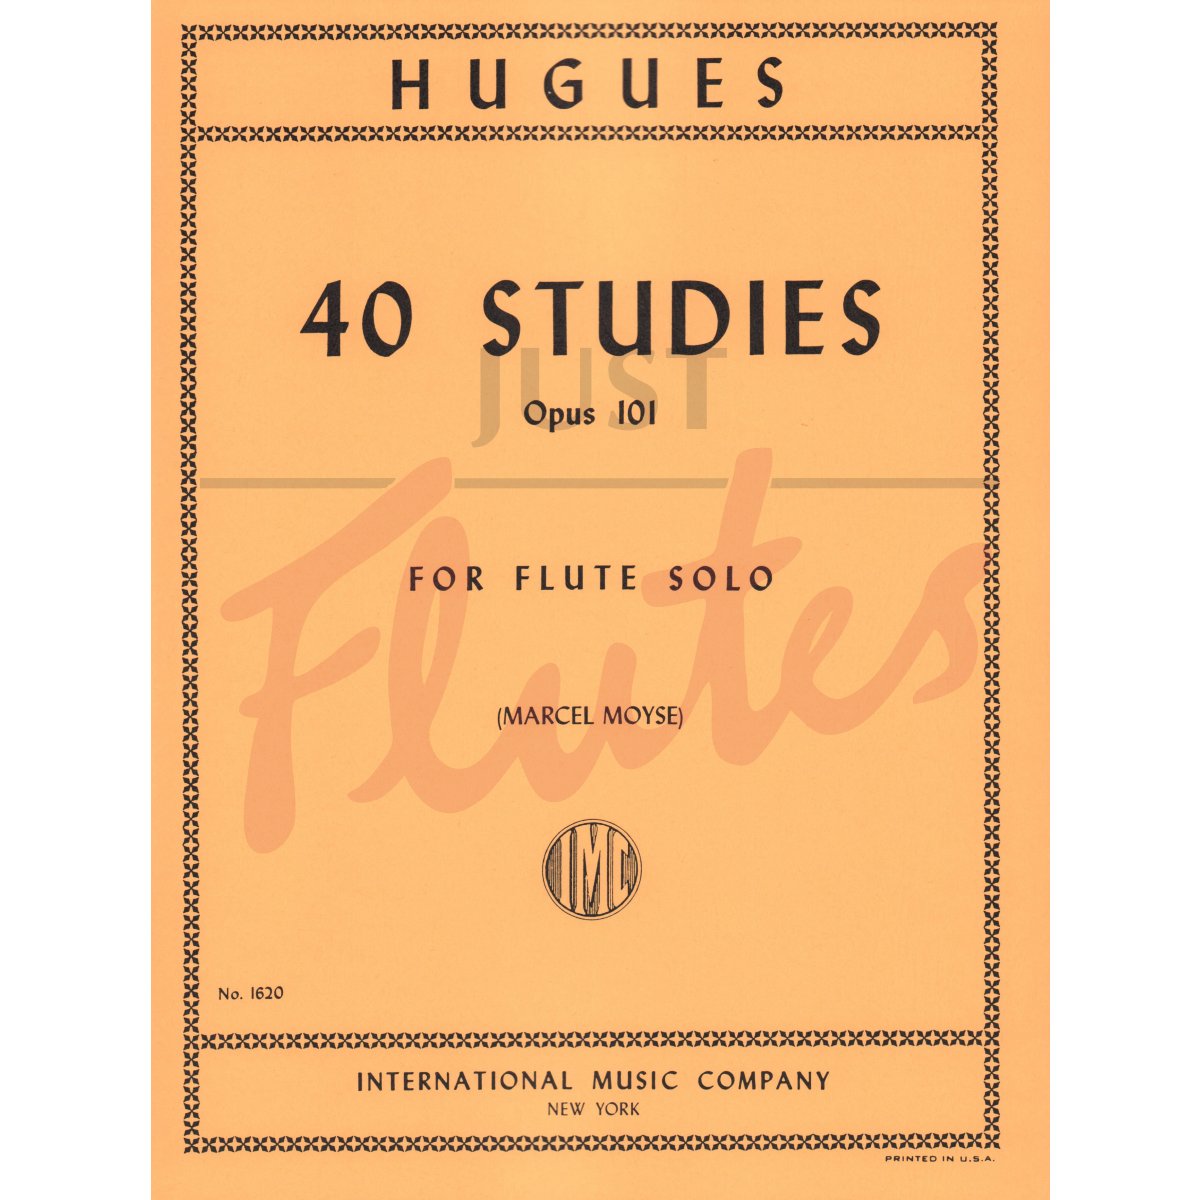 40 Studies for Flute